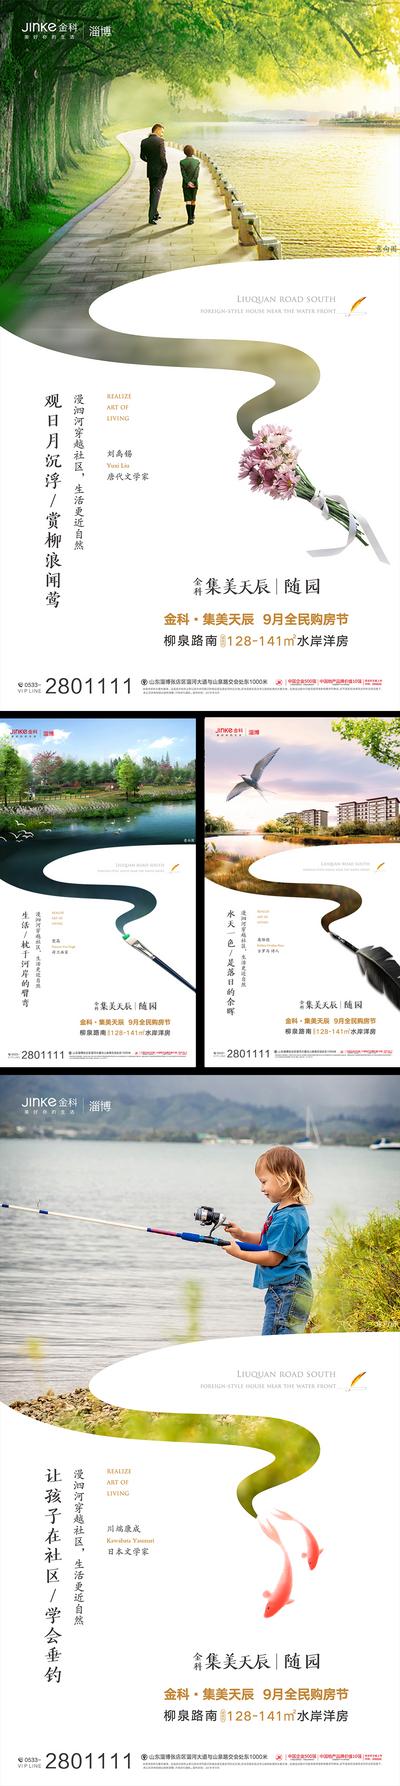 南门网 海报 房地产 河景 河畔 江景 生态 环境 钓鱼 创意 价值点